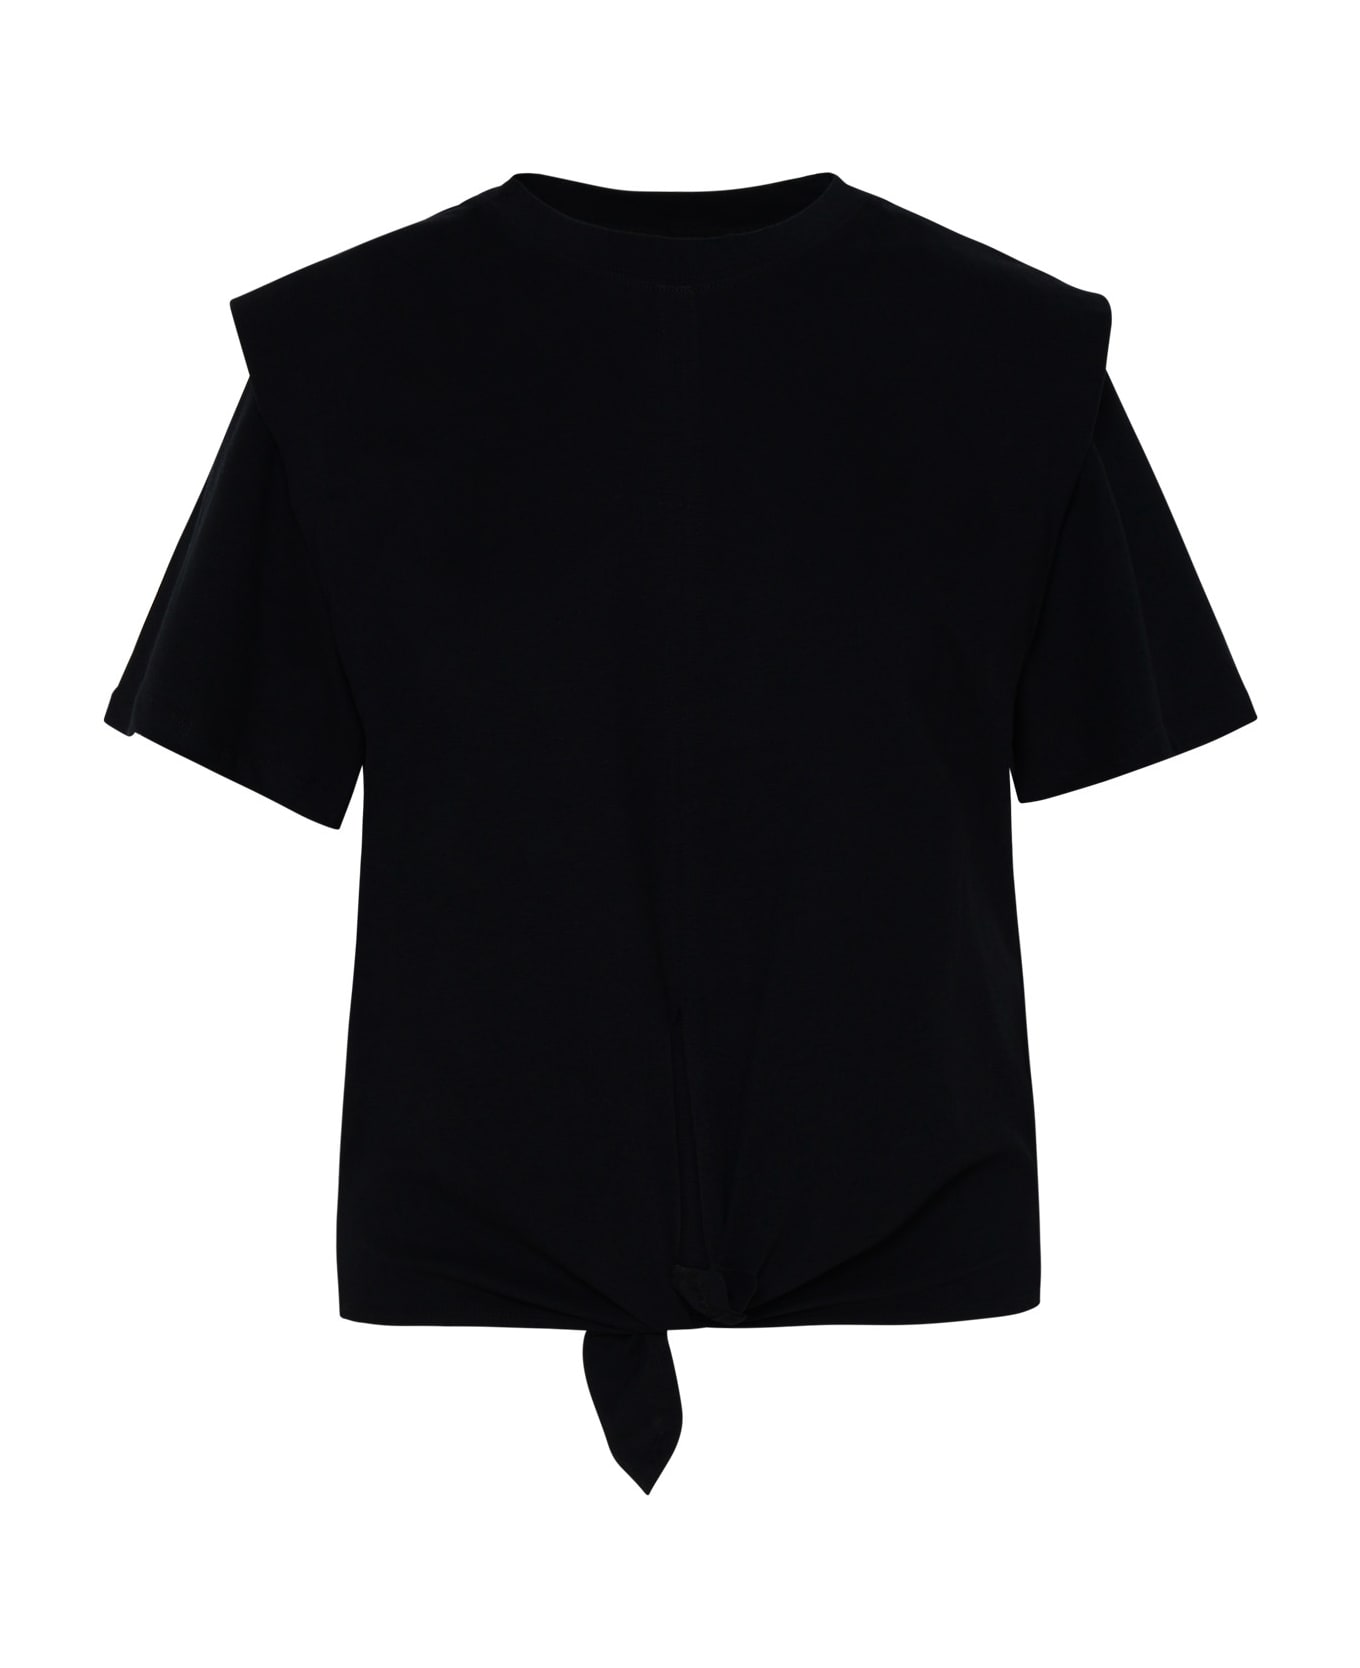 Isabel Marant Zelikia Black Cotton T-shirt - Black